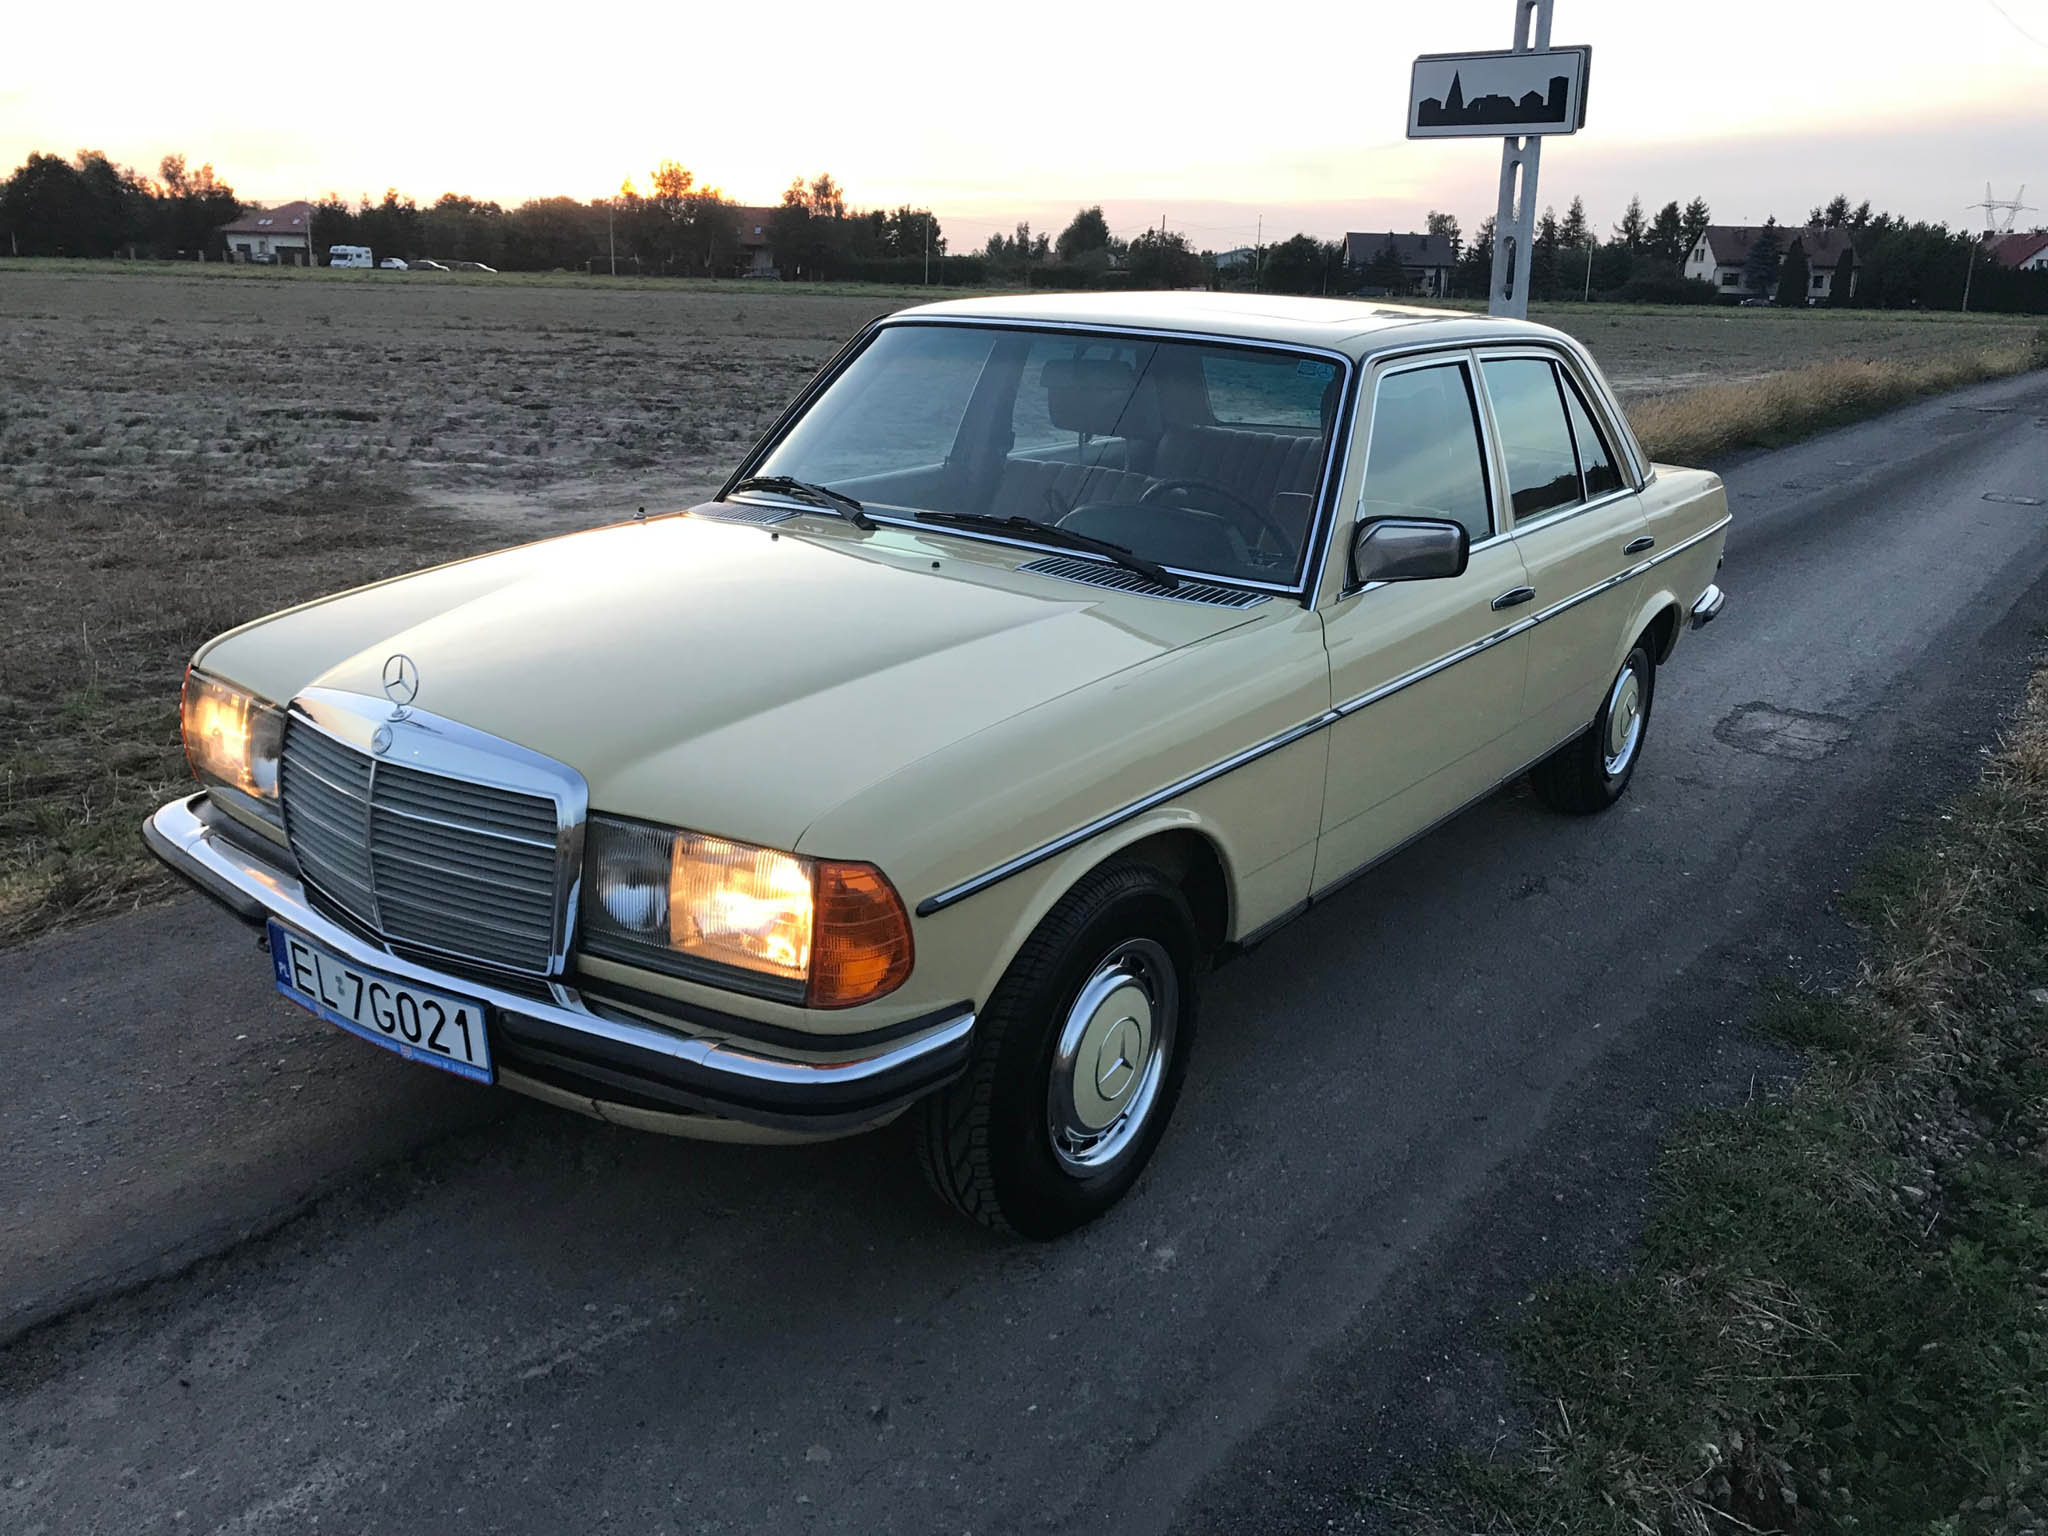 Mercedes 280E W123 1978 74000 PLN Łódź Giełda klasyków